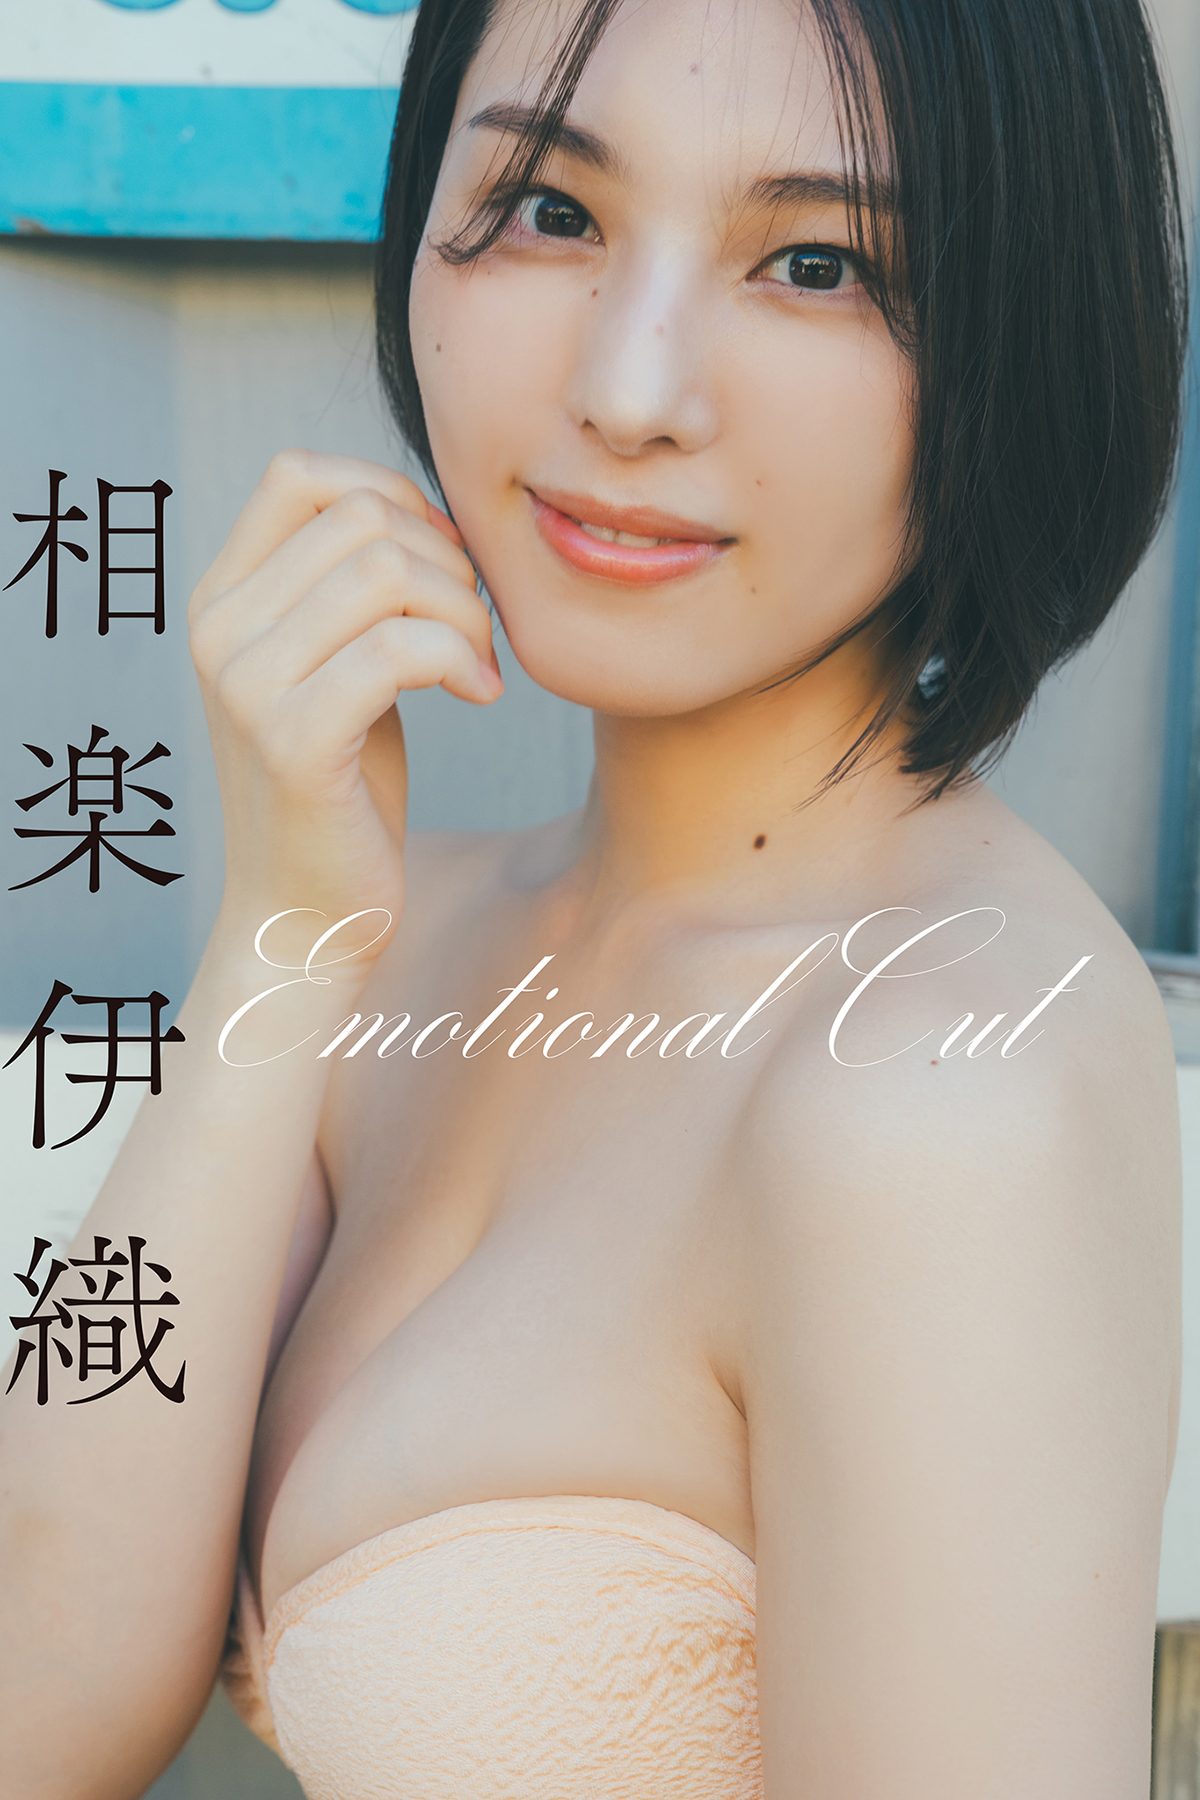 View - Iori Sagara 相楽伊織 - Emotional Cut - 